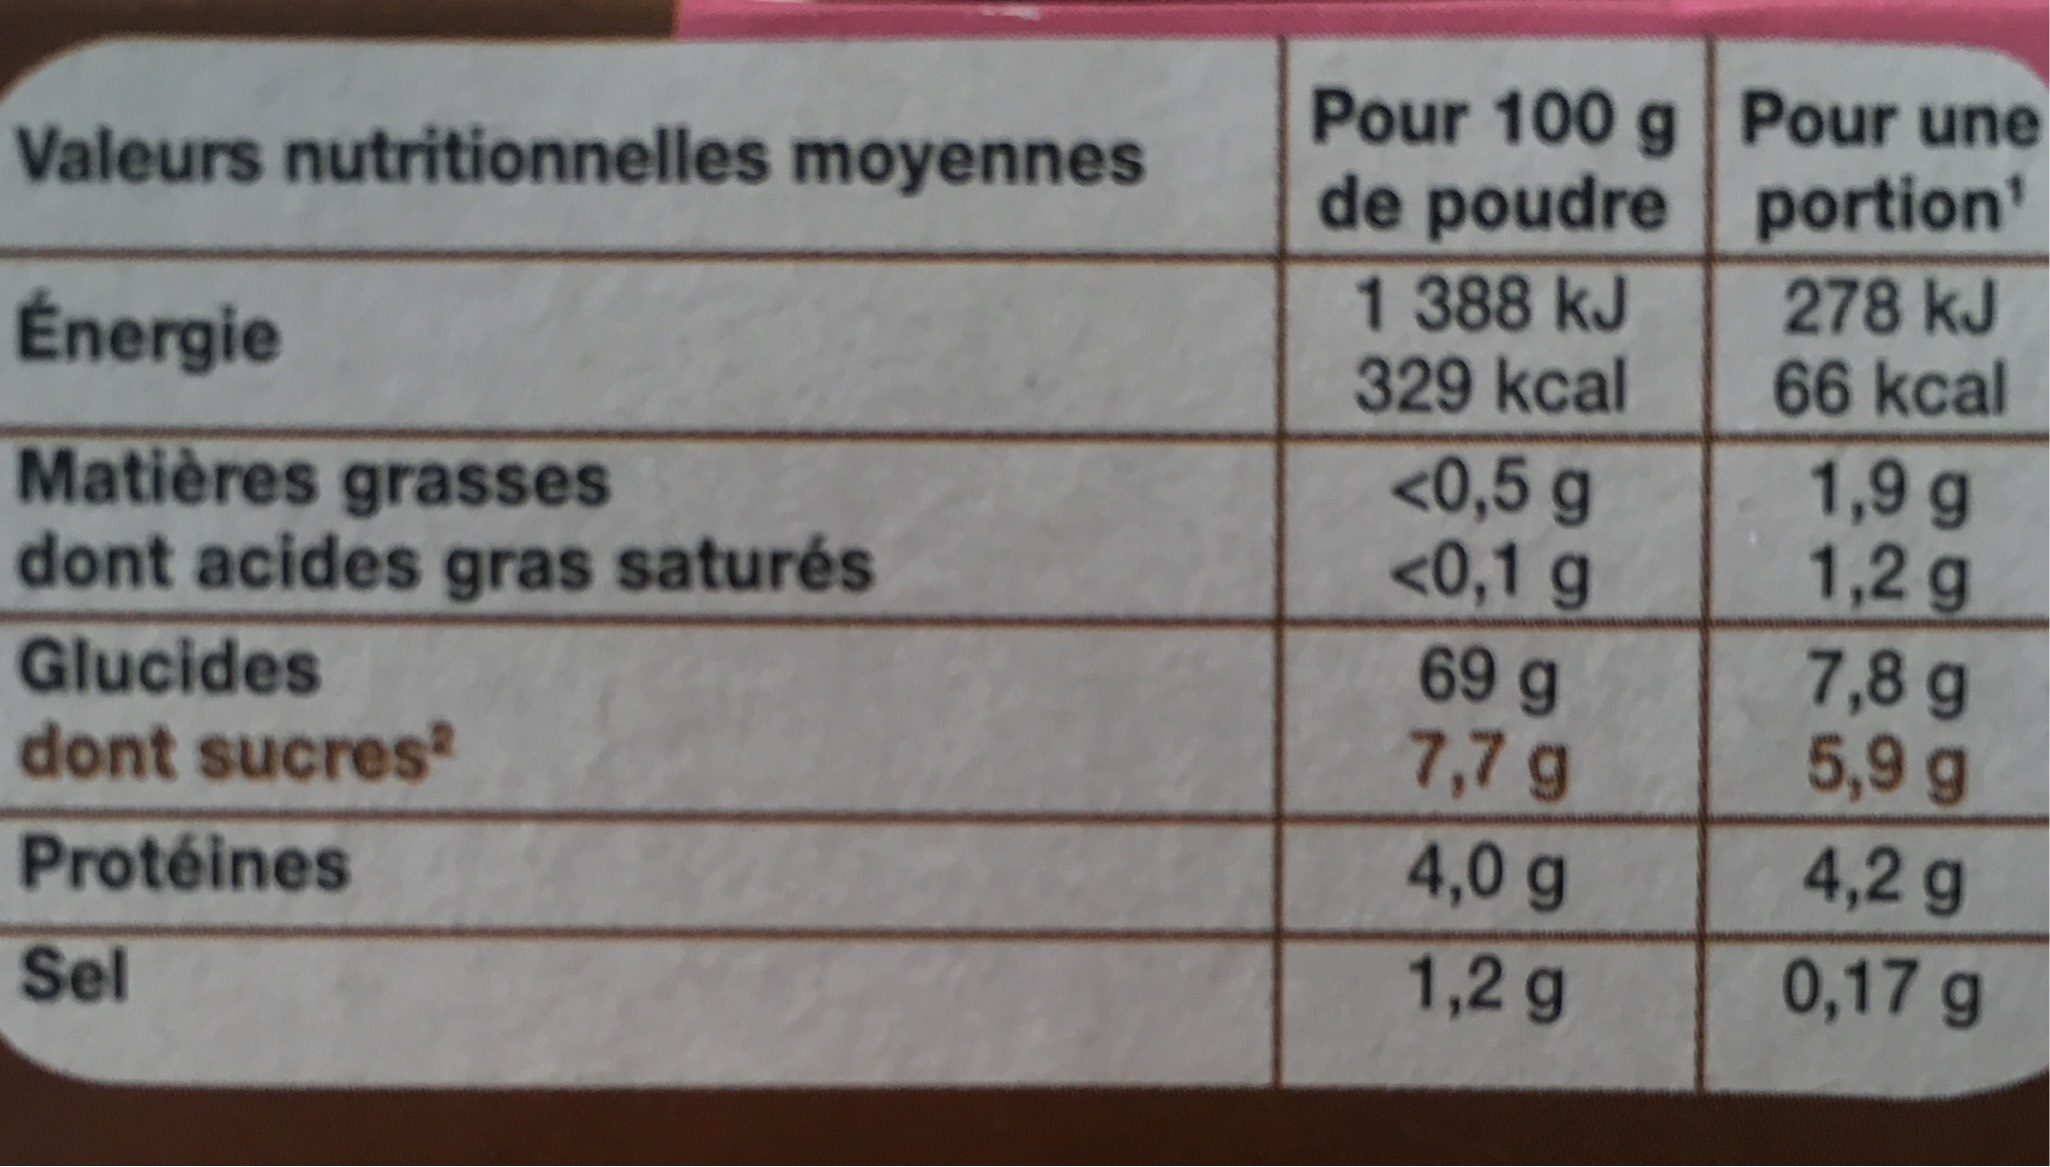 Entremet non sucre cafe etui 8x1/4lit.40g Nature&Aliments - Nutrition facts - fr